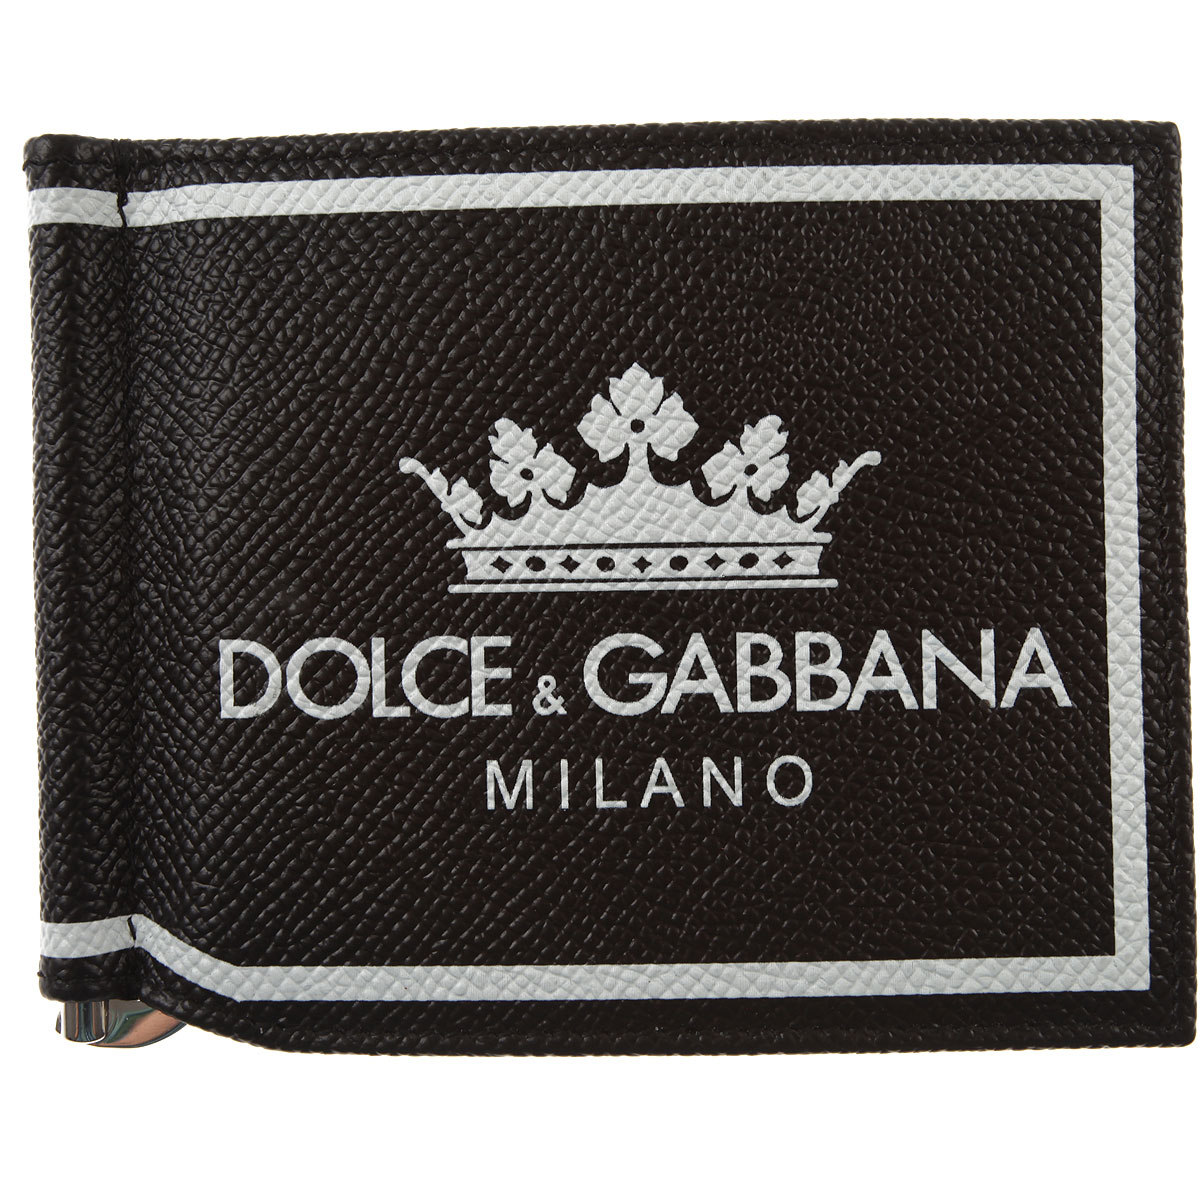 Код дольче габбана. Dolce Gabbana бренд. Дольче Габбана лейбл. Вышивка логотипа Дольче Габбана. Dolce Gabbana надпись.